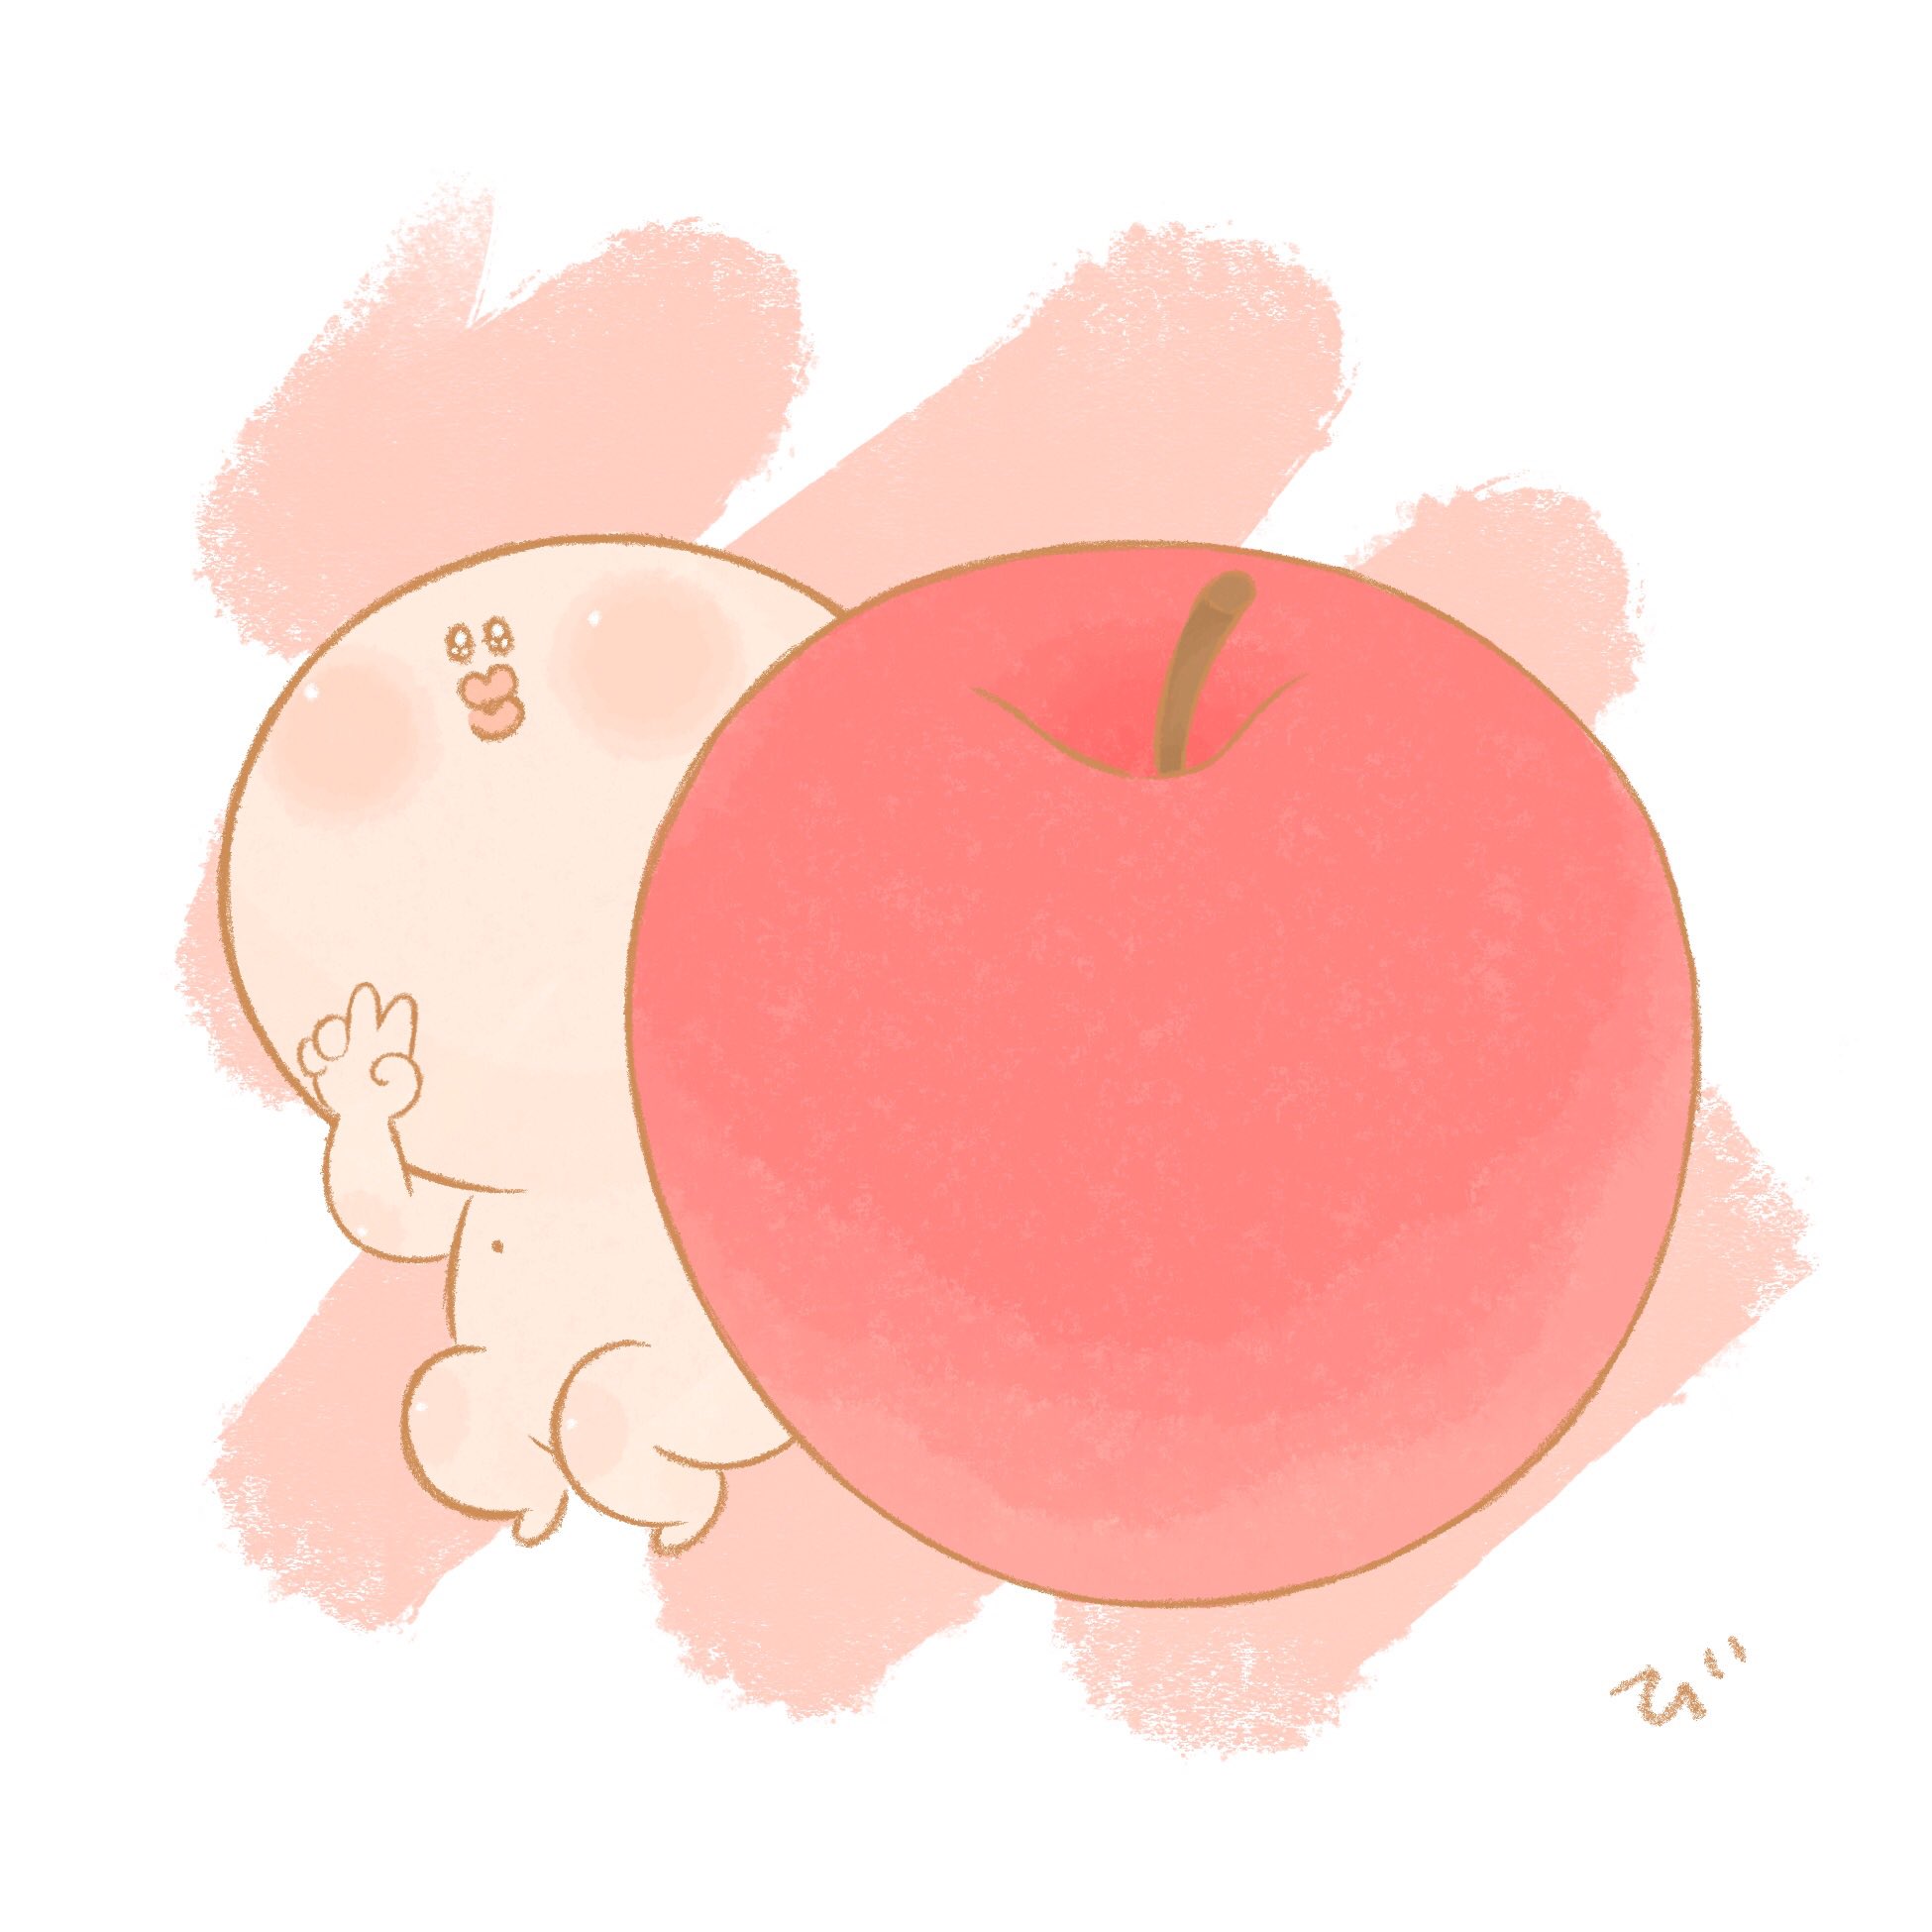 びるくちびる りんごと びるくちびる イラスト 描いてみた フルーツ ゆるかわ かわいい T Co 3dpsfqazkz Twitter